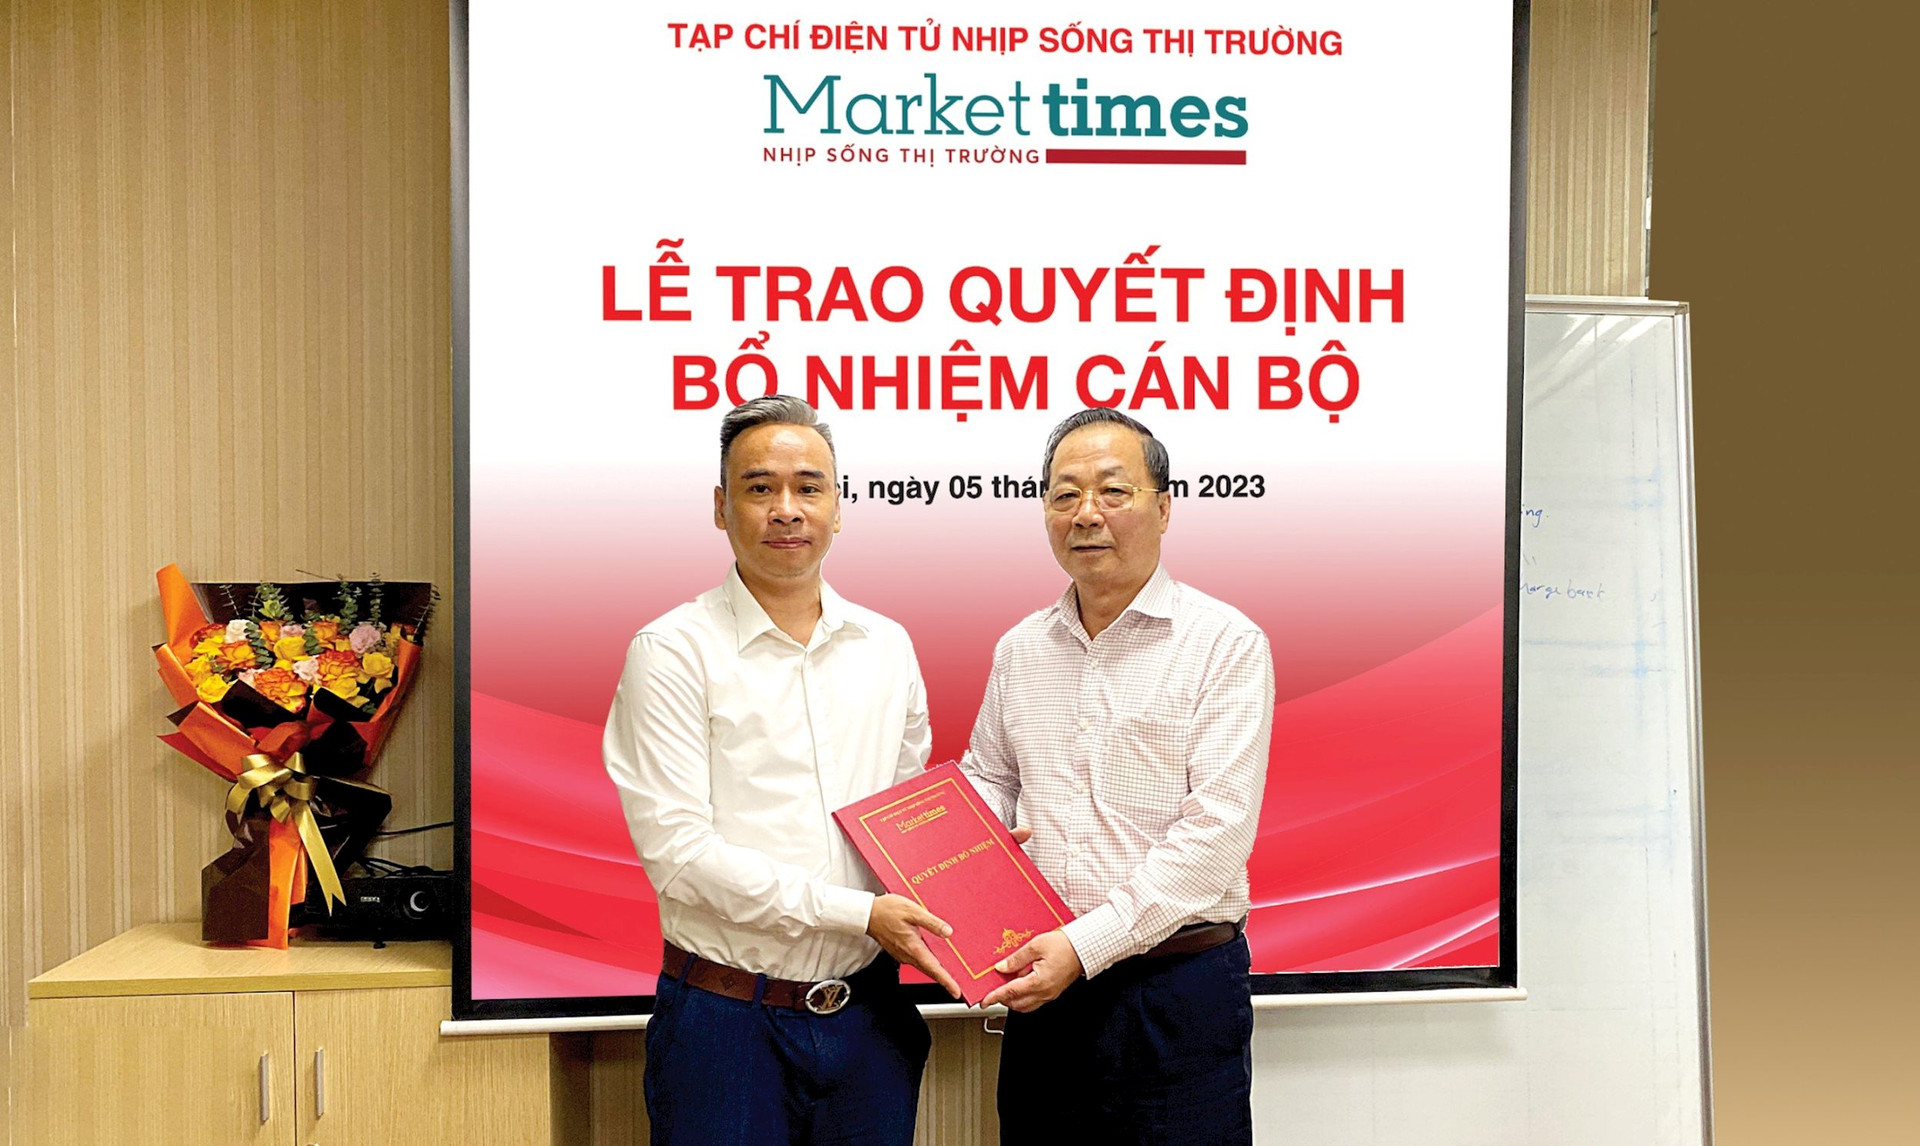 Bổ nhiệm nhà báo Đinh Văn Tịnh giữ chức vụ Trưởng ban Biên tập Tạp chí điện tử Nhịp sống thị trường